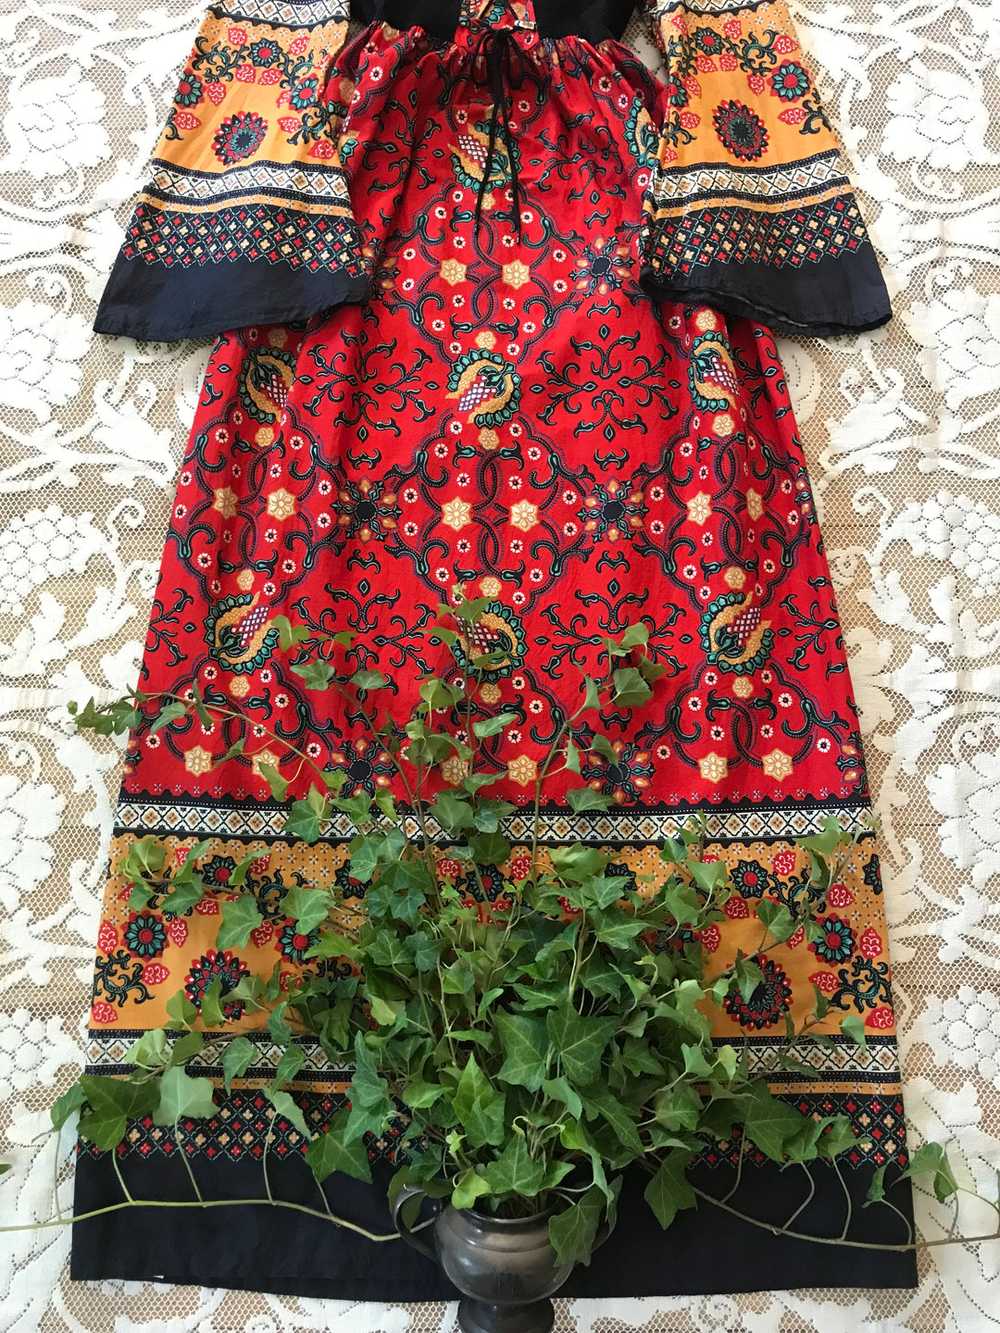 Authentic 1970’s vintage paisley print dress 🌿⚔️… - image 7